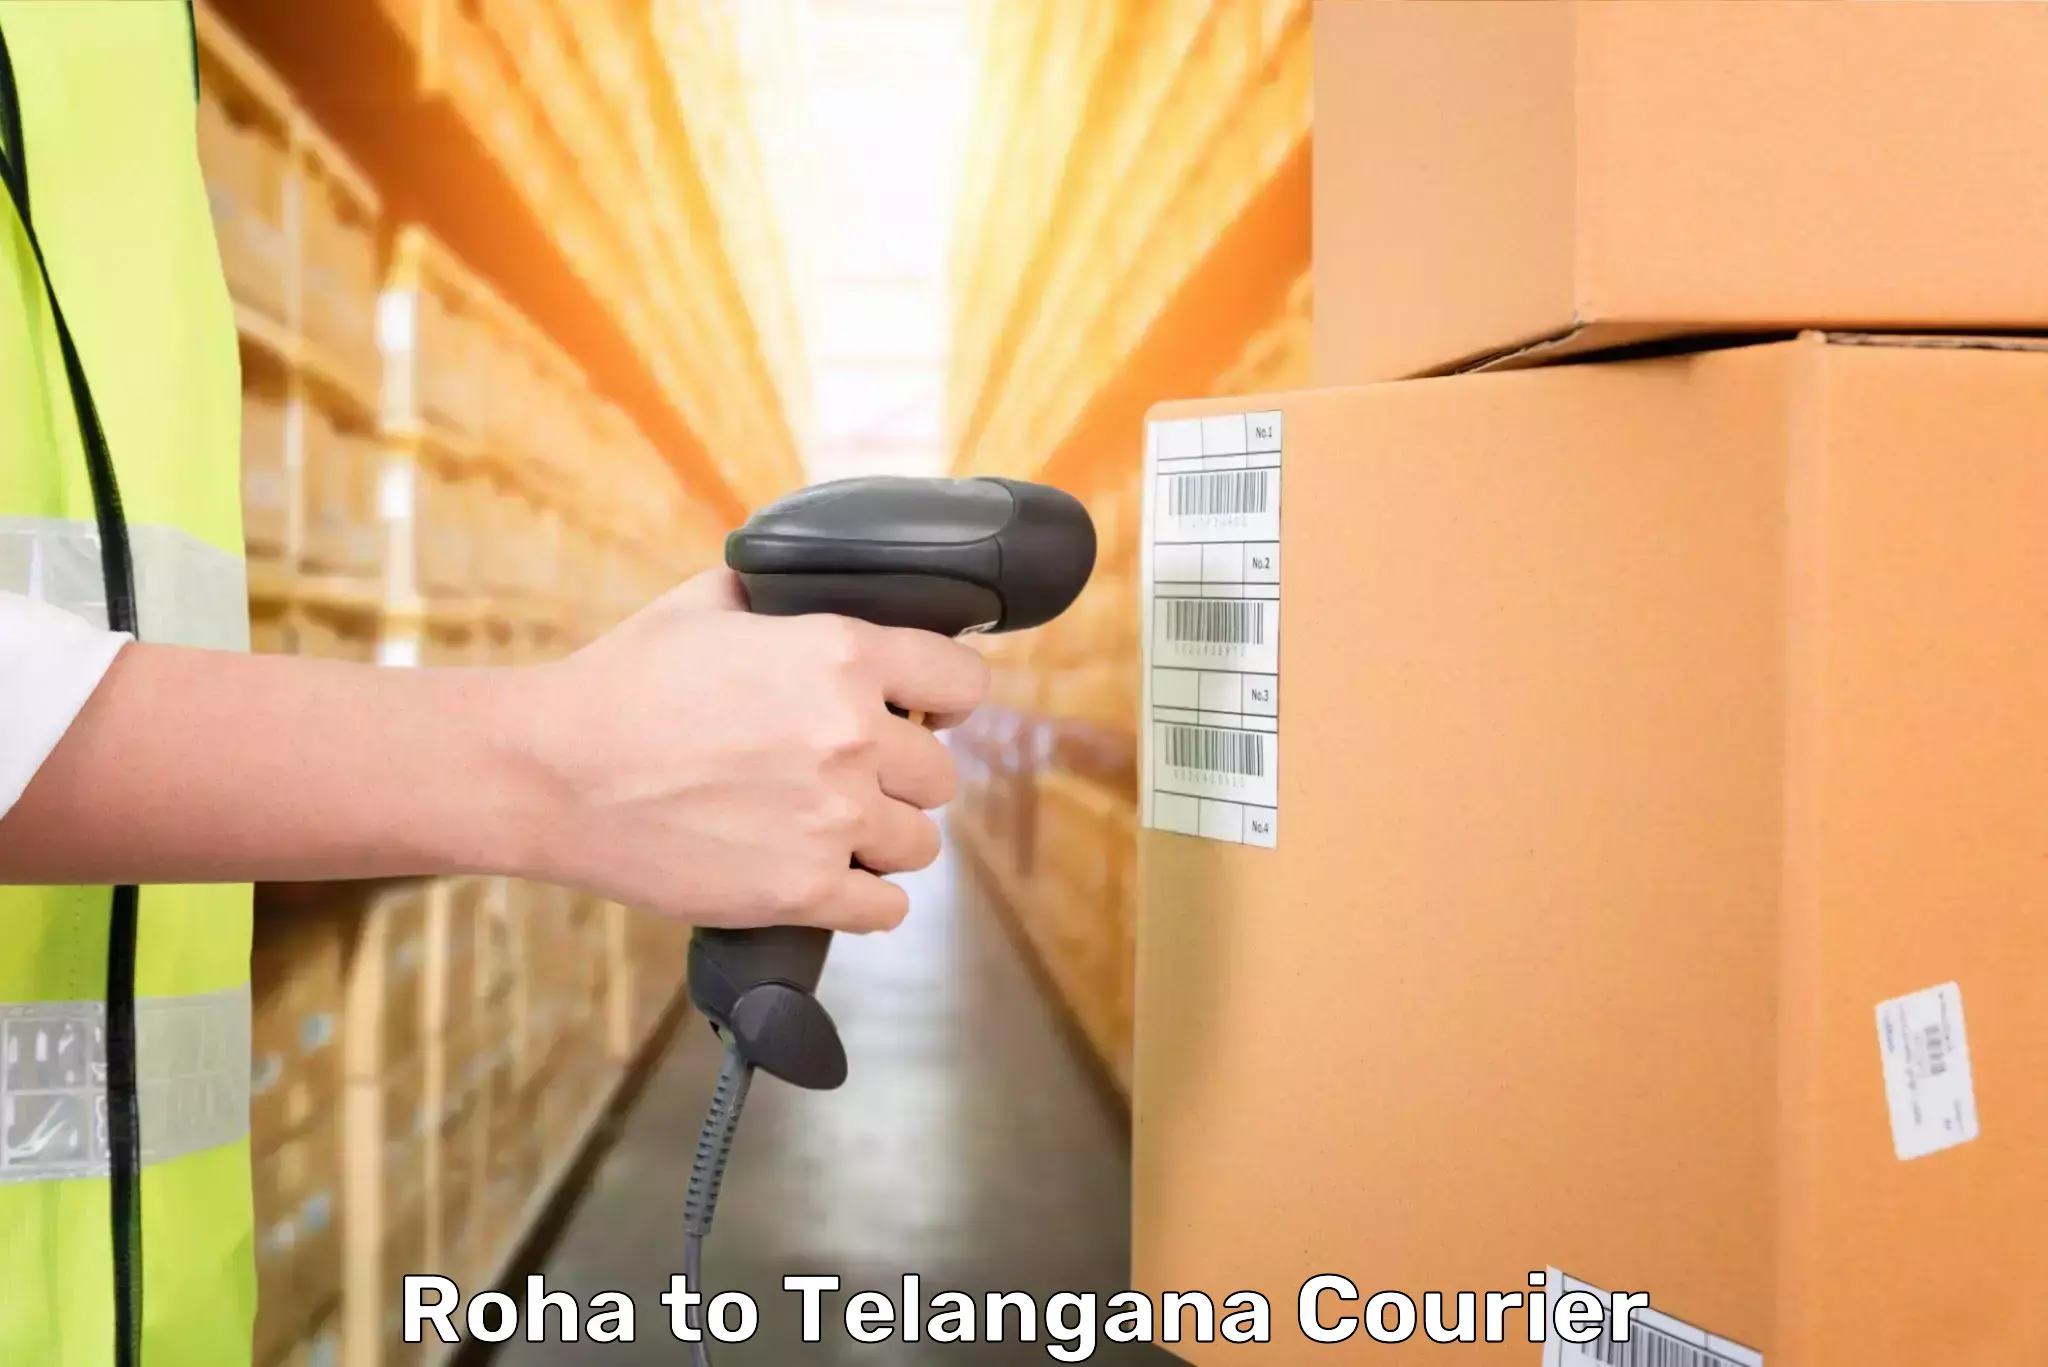 Luggage delivery network Roha to Yellandu